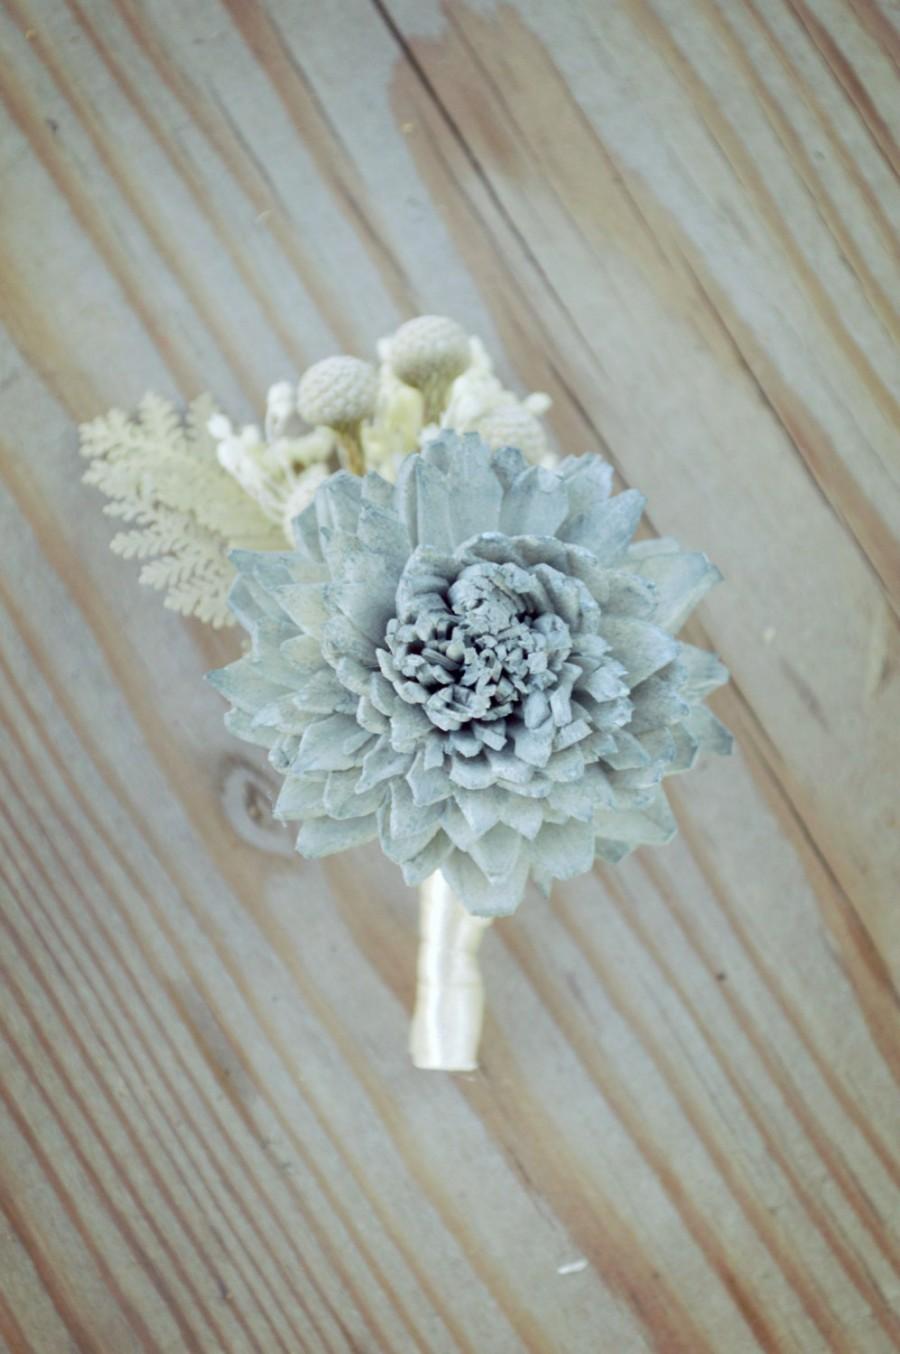 زفاف - Slate Wedding Collection Boutonniere Bouquet Sola Flowers and dried Flowers Grey Navy Blue Dusty Miller Silver Brunia Anemone